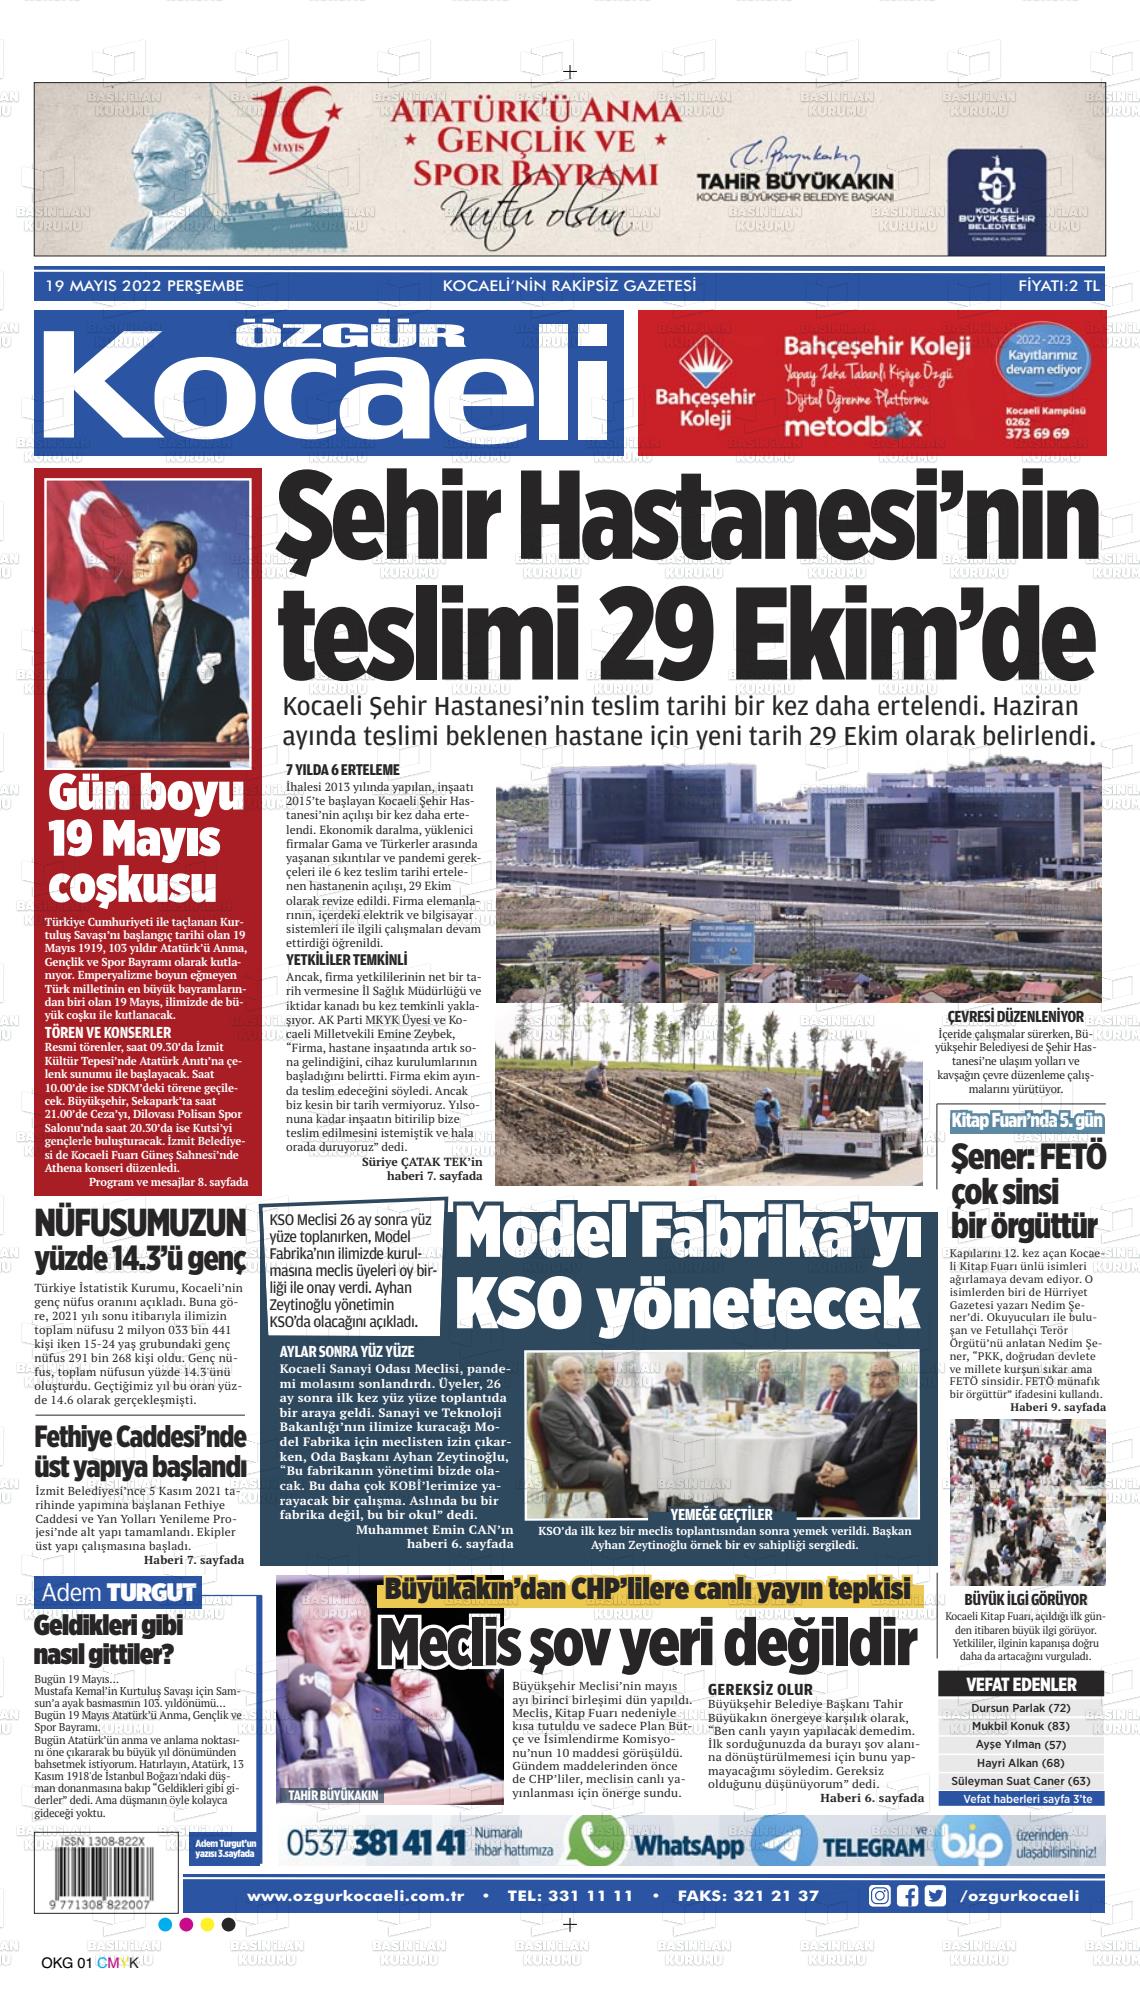 19 Mayıs 2022 Özgür Kocaeli Gazete Manşeti